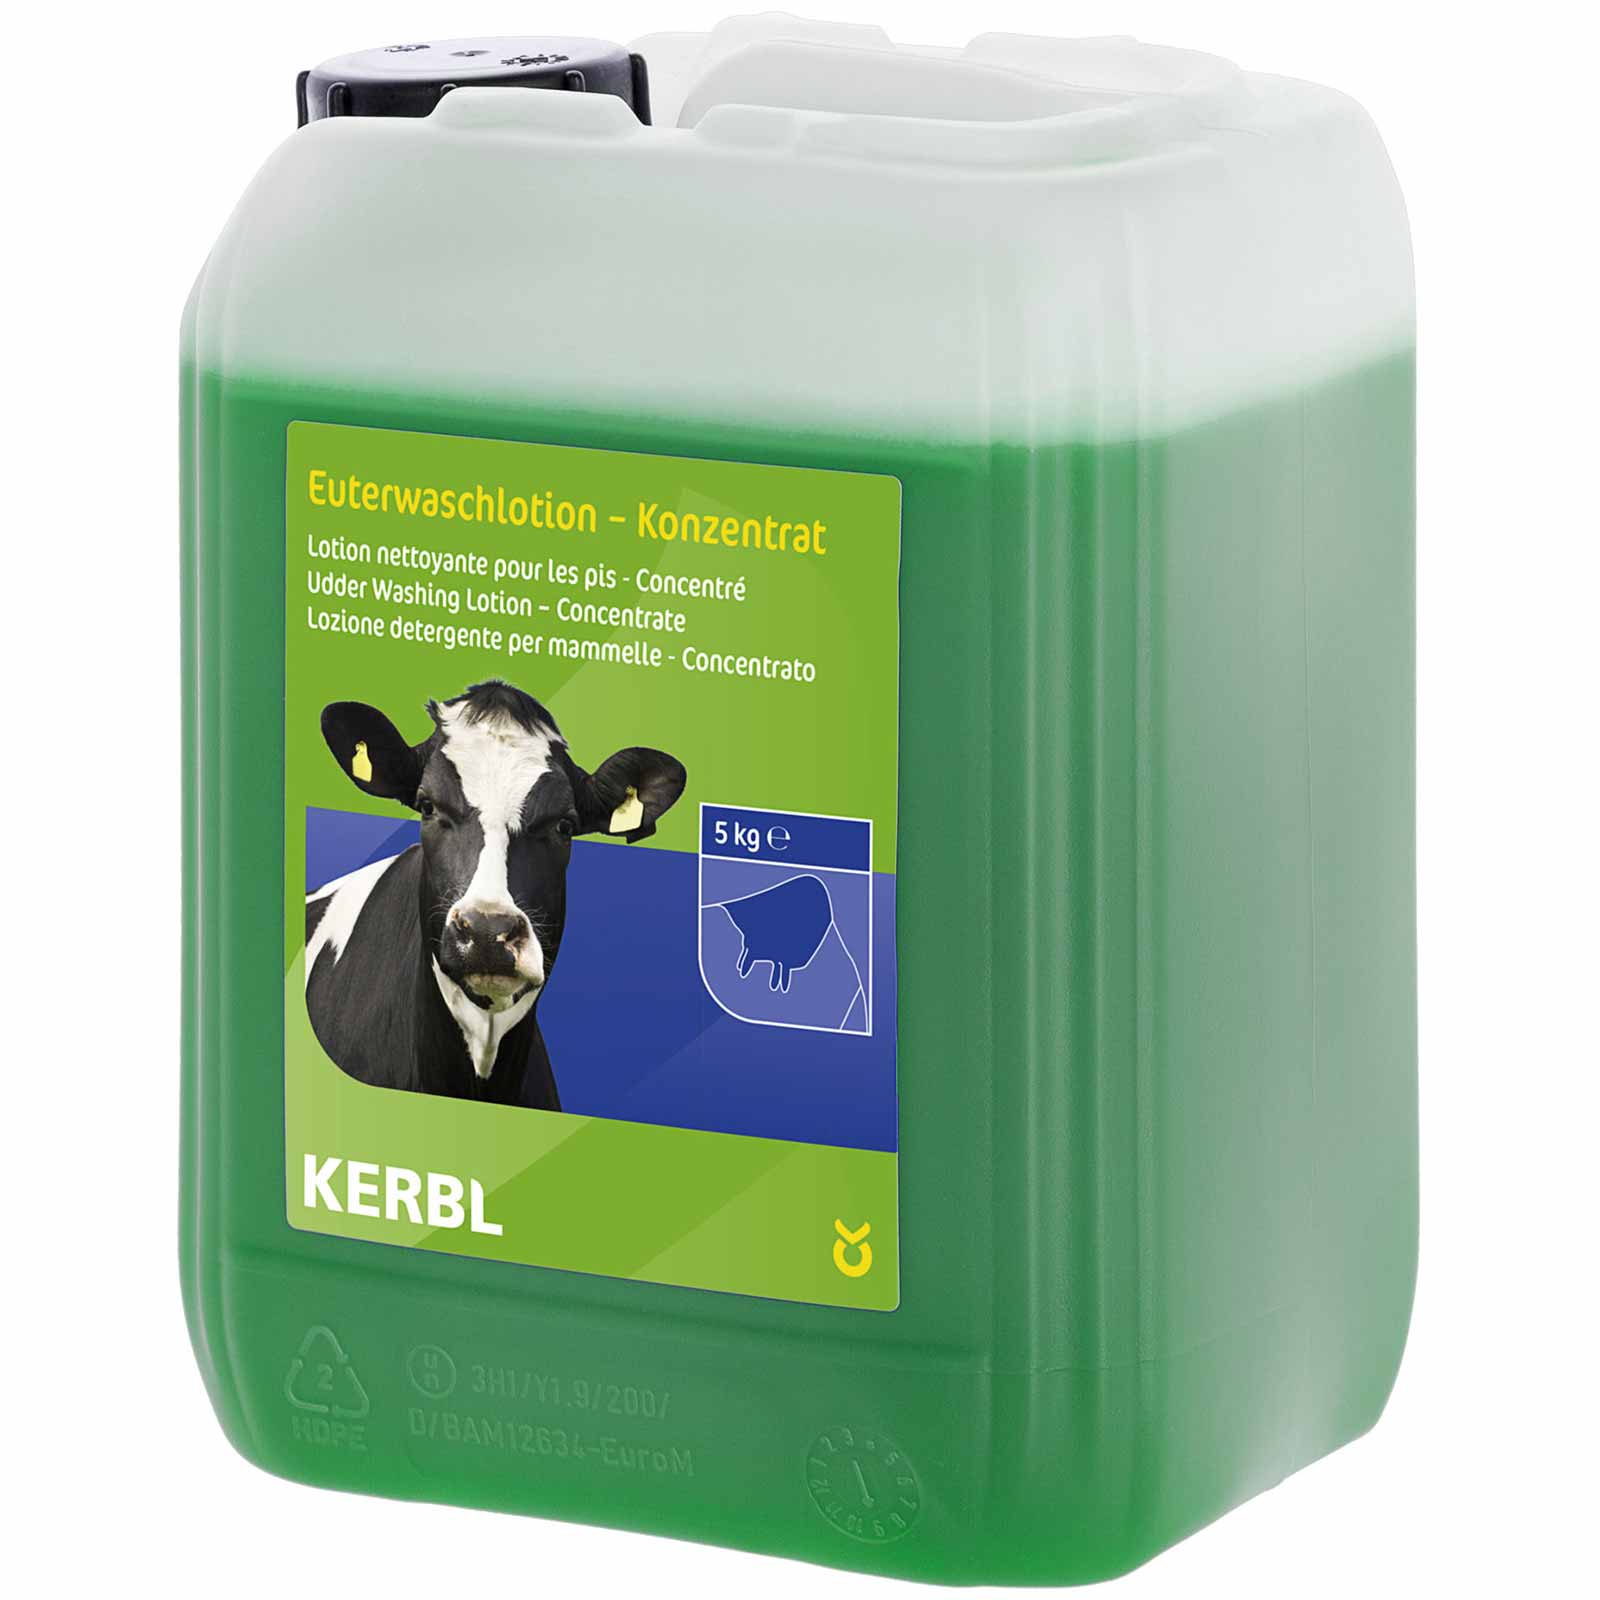 Kerbl Udder Wash Lotion Concentrate 5 liter